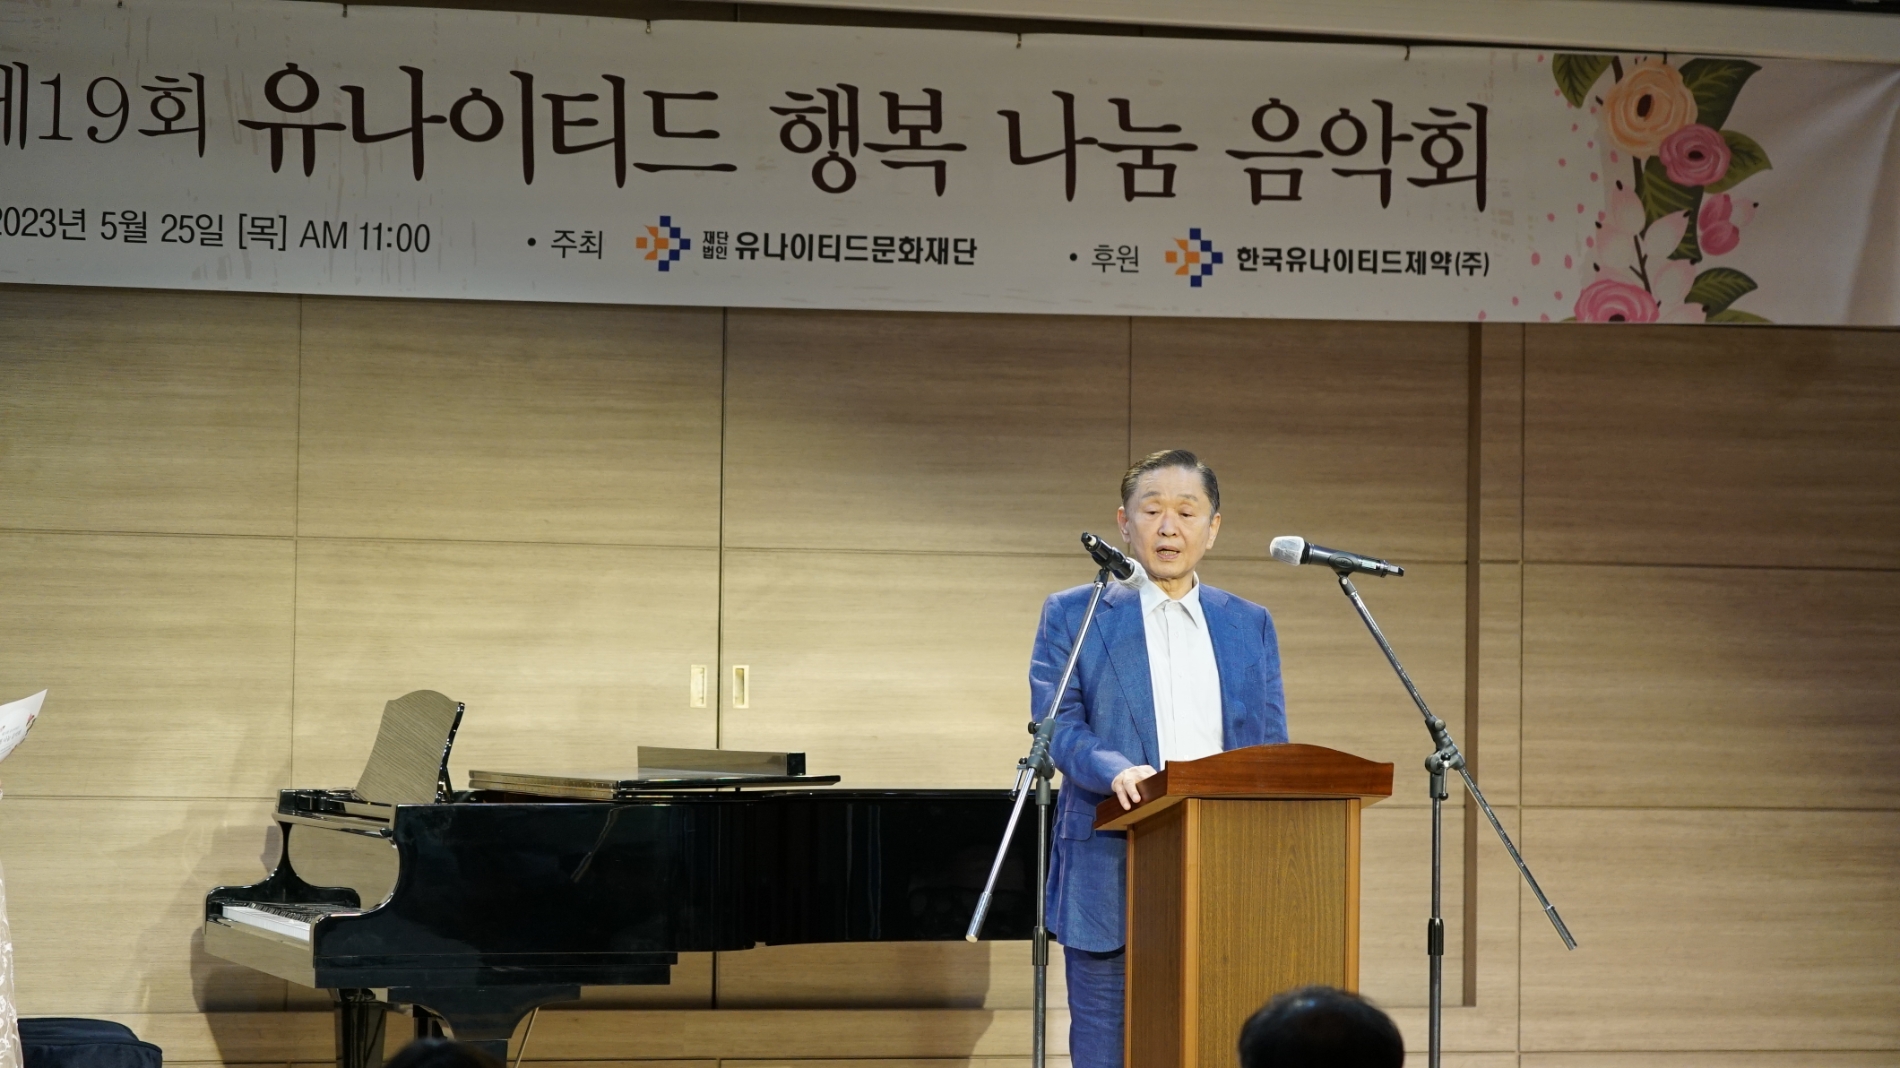 [생활경제 이슈] 유나이티드문화재단, ‘제19회 행복 나눔 음악회’ 개최 外